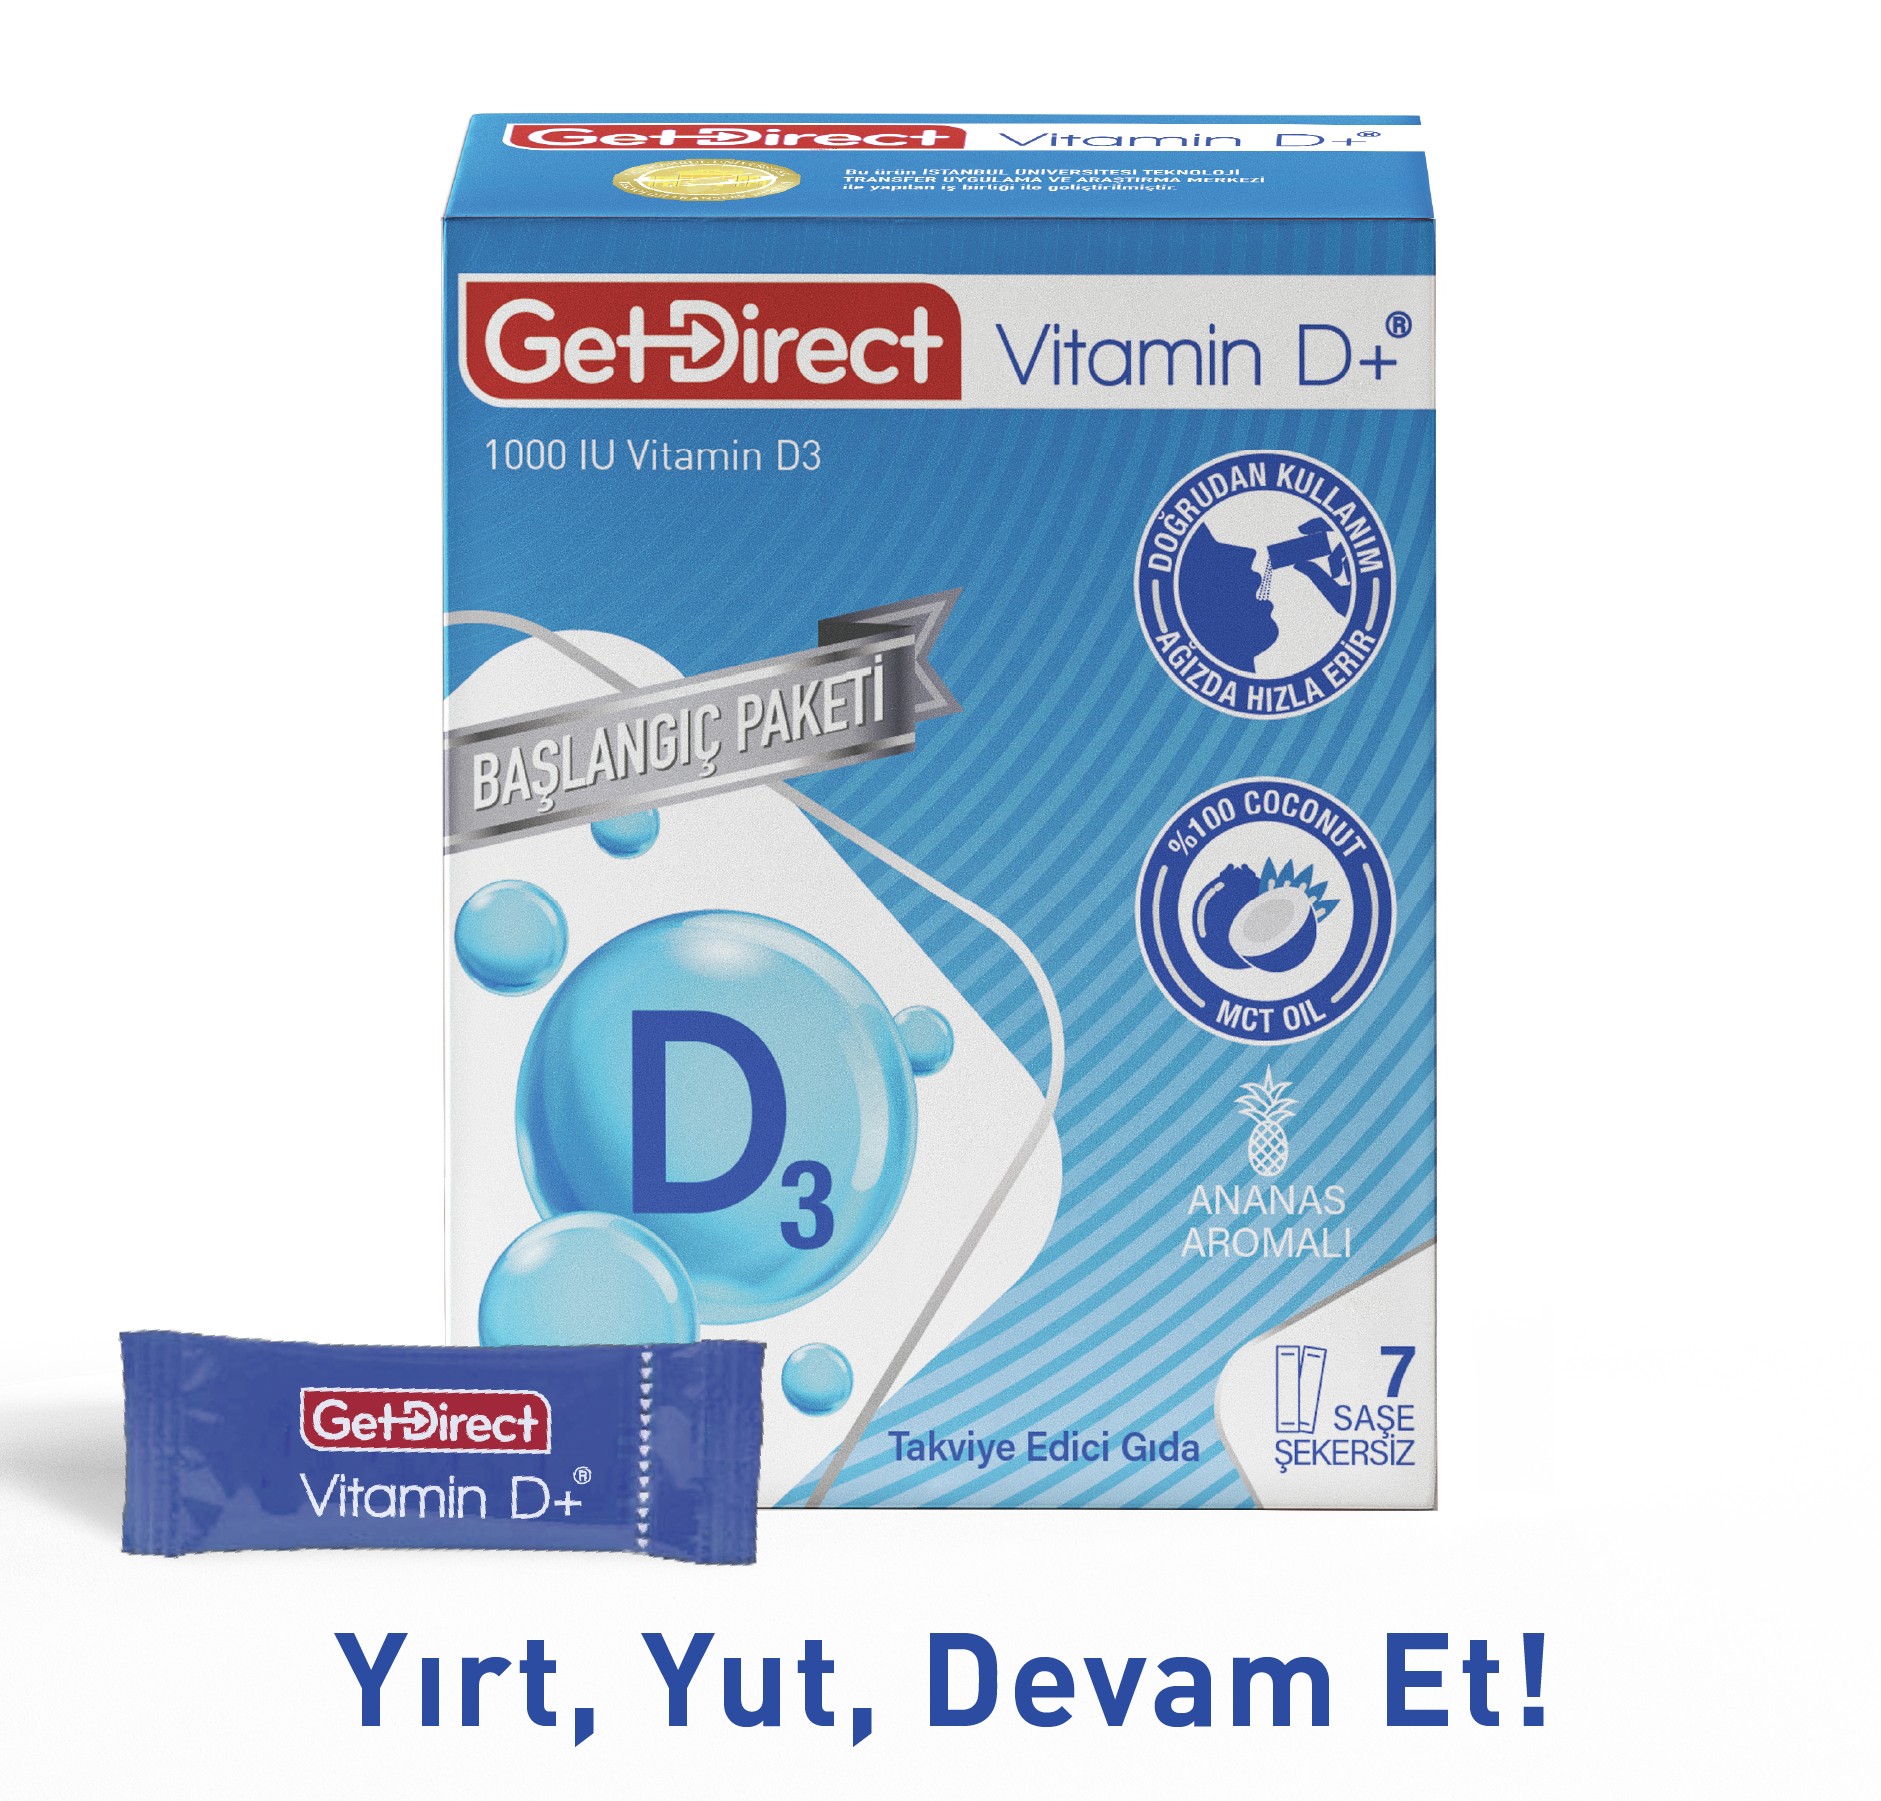 GetDirect Vitamin D+ 1000 IU Vitamin D3  İçeren Takviye Edici Gıda 7 saşe